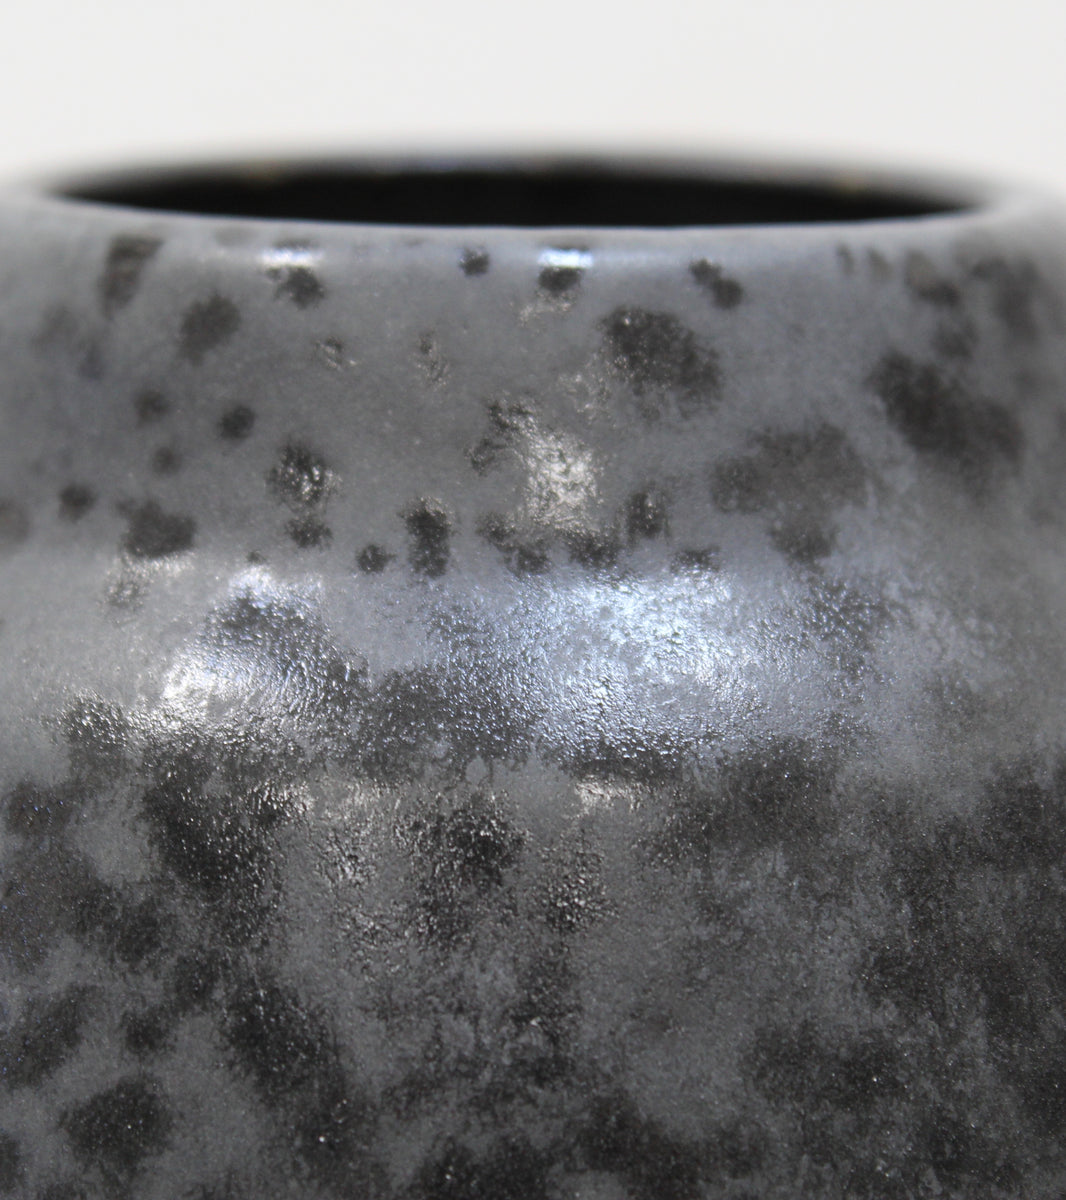 Tall Gundiga Shaped Vase <br> Black Glaze